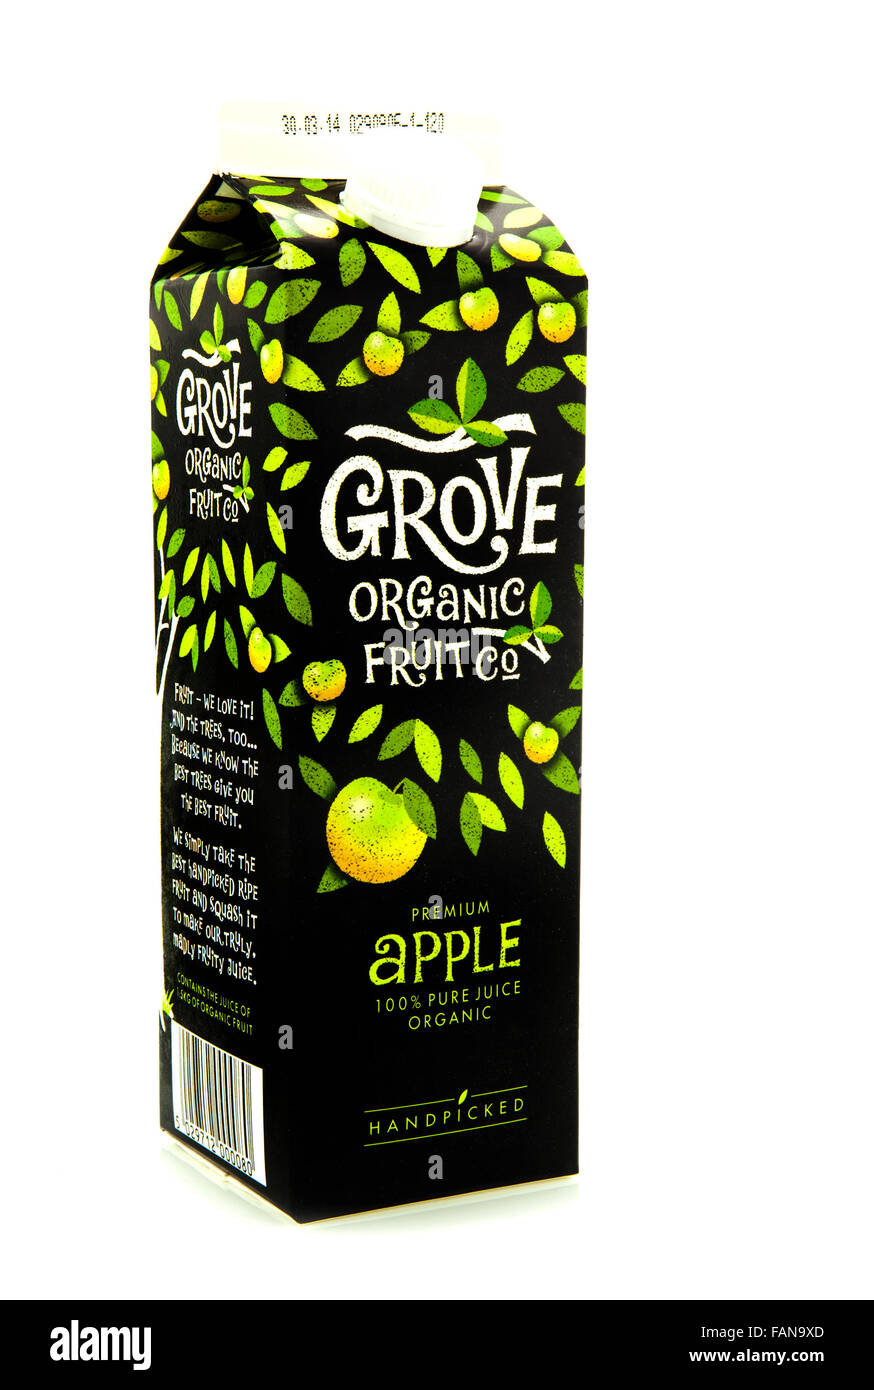 Carton de jus de pomme biologique Grove sur fond blanc Photo Stock - Alamy